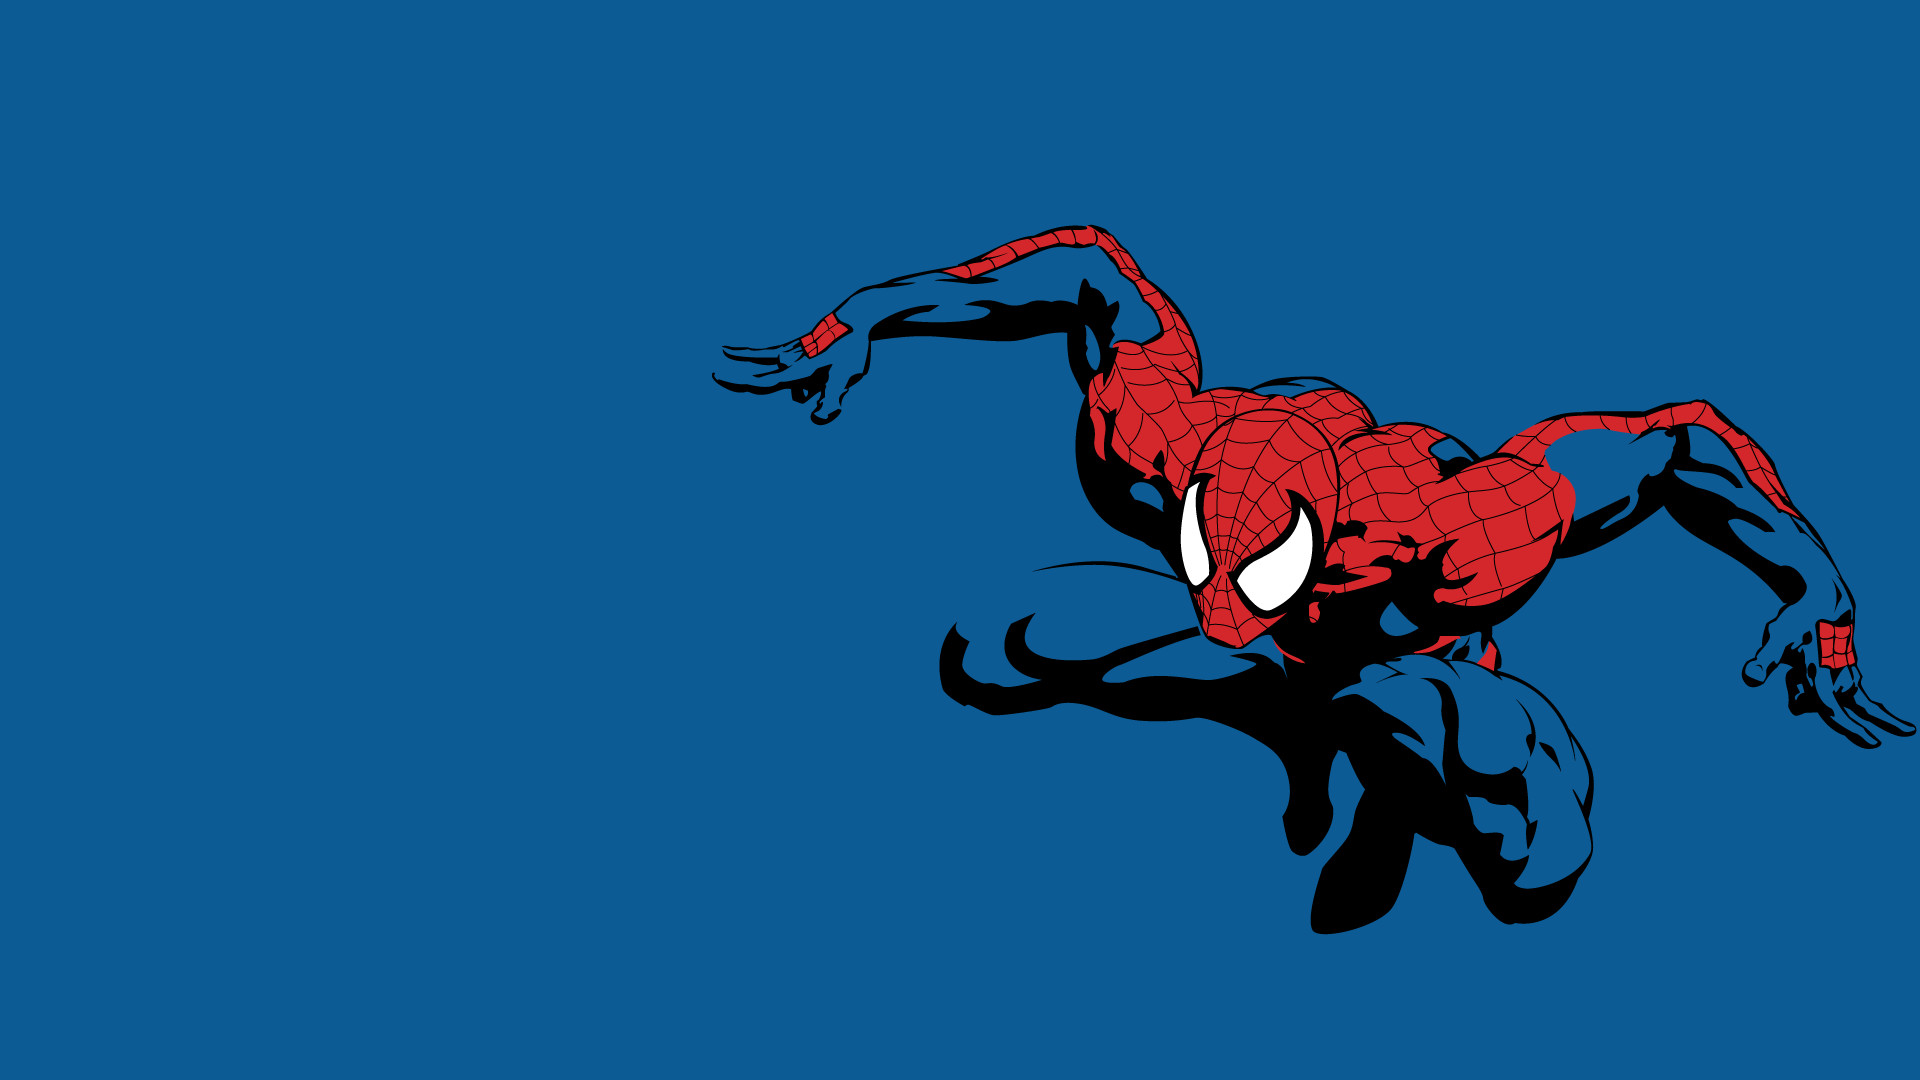 1920x1080 ... Symbiote Spider-Man Wallpaper by ferncaz95 on DeviantArt ...